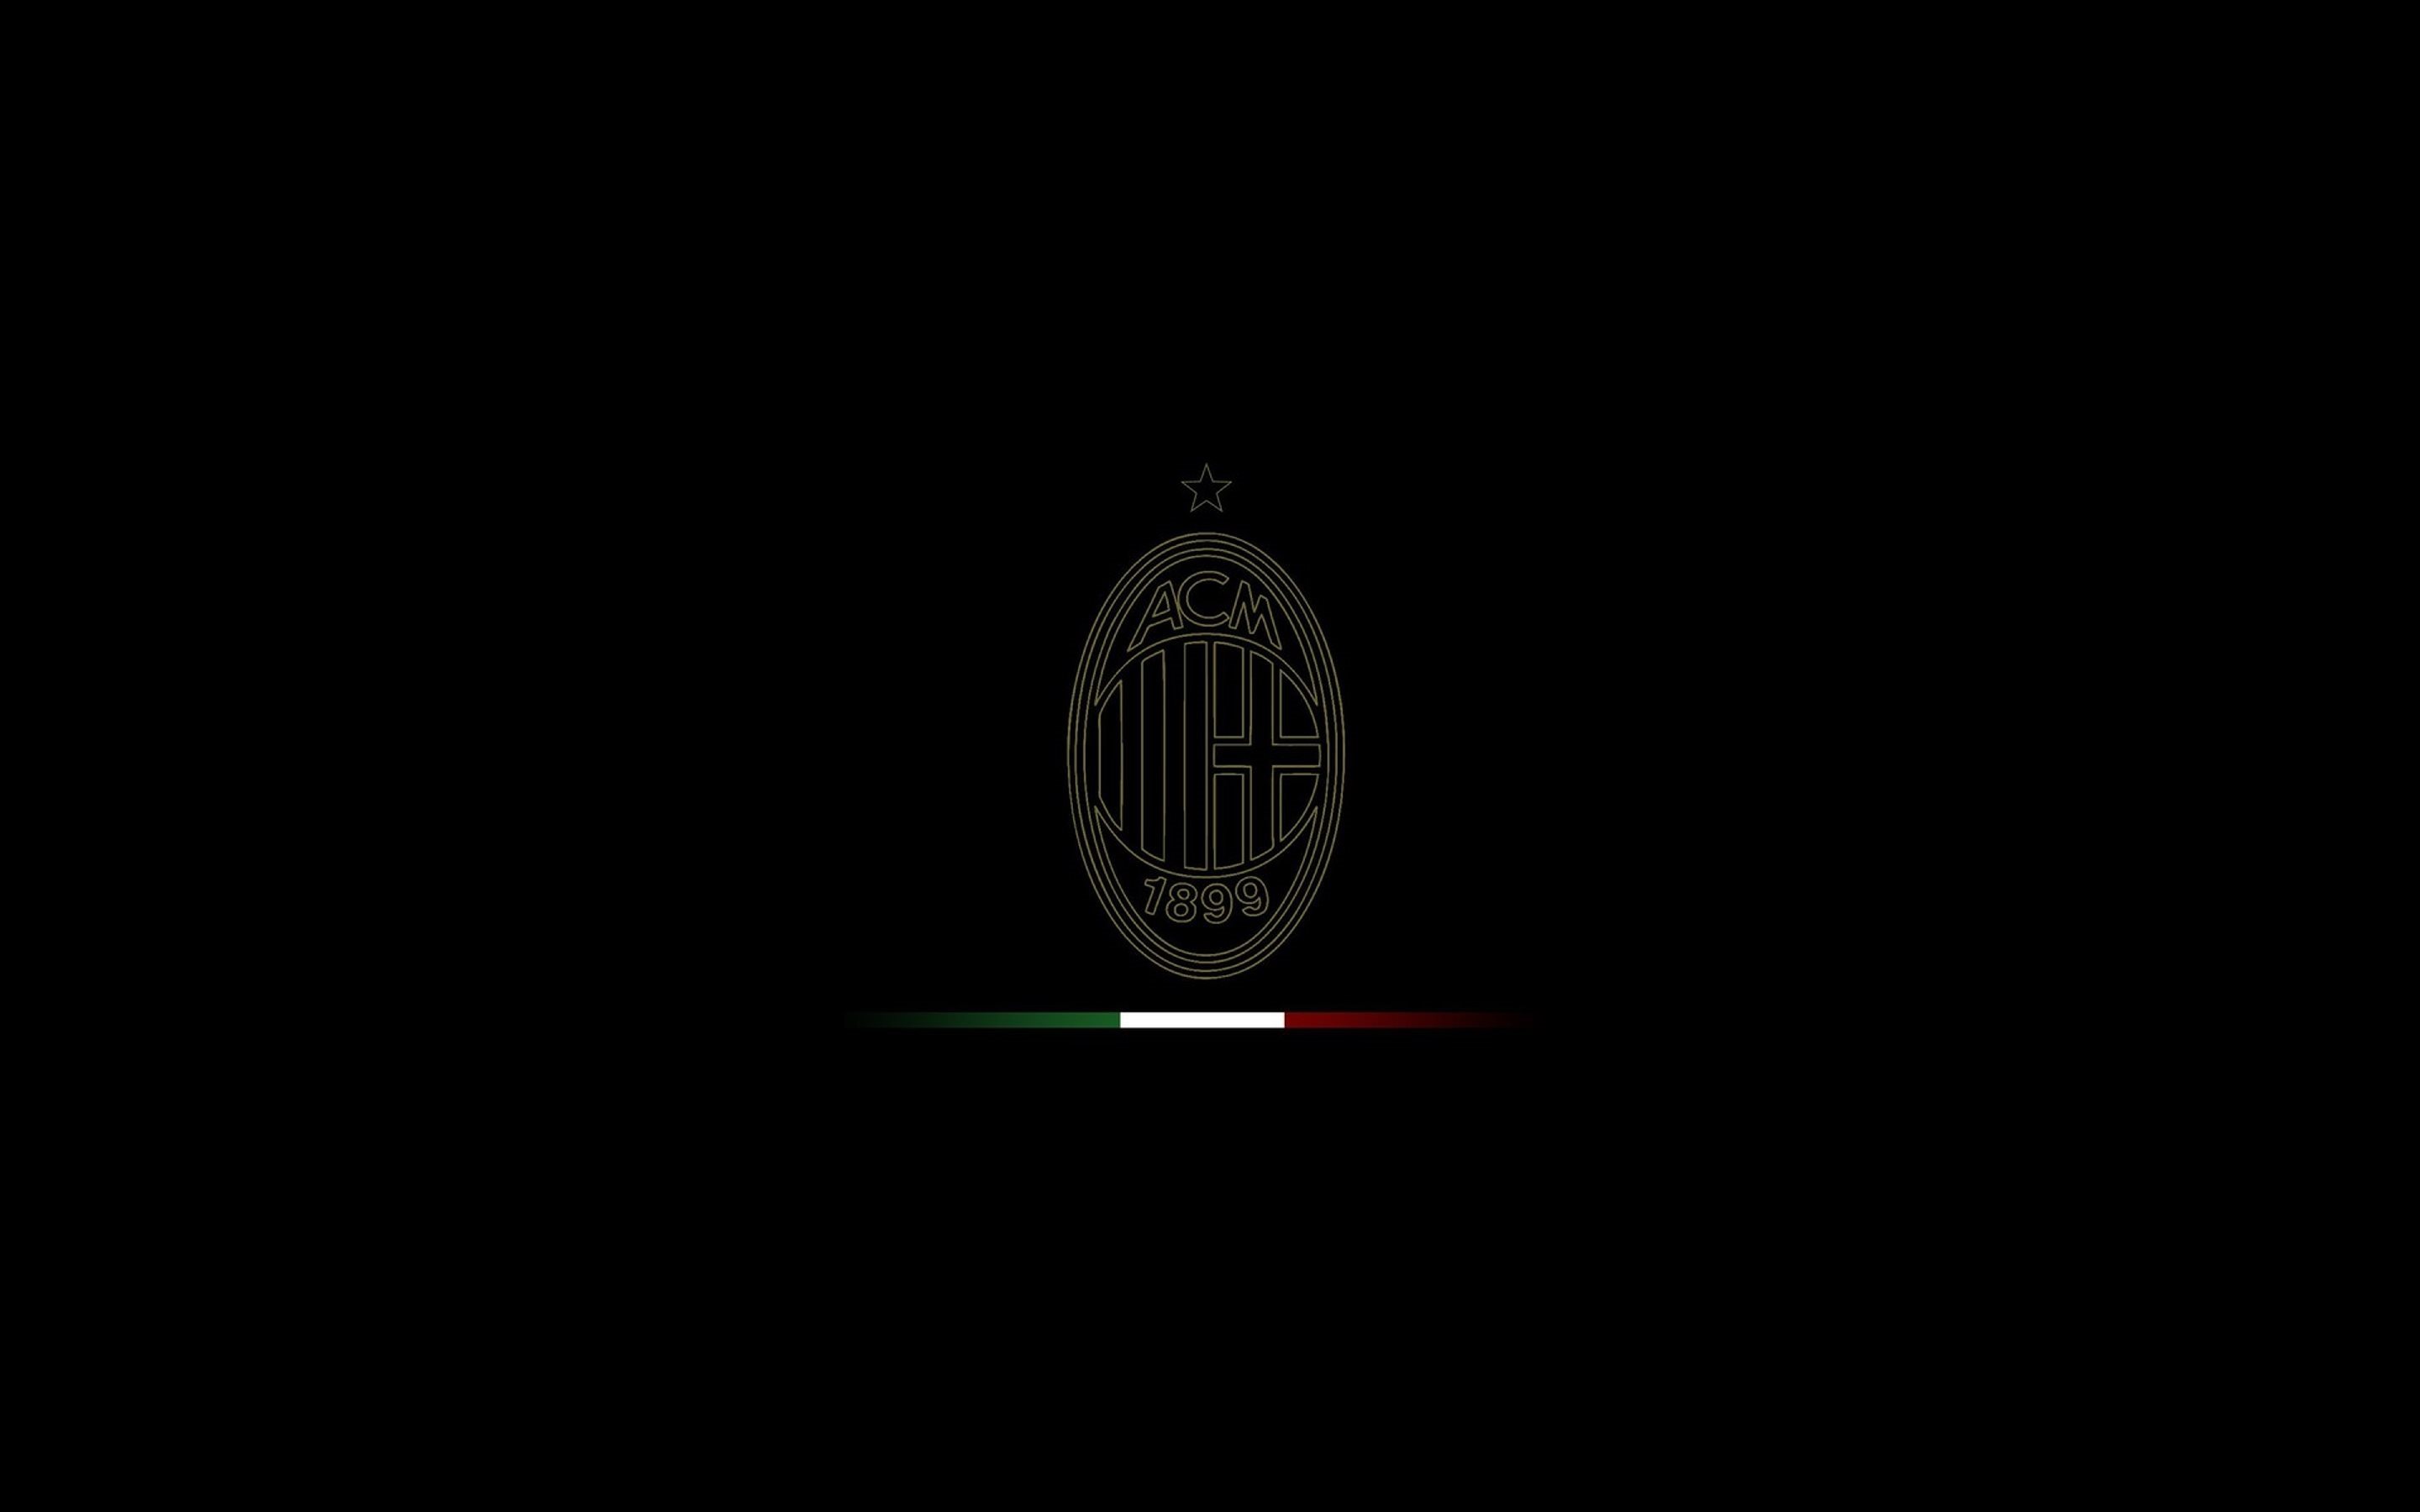 Descarga gratuita de fondo de pantalla para móvil de Fútbol, Logo, Emblema, Deporte, A C Milan.